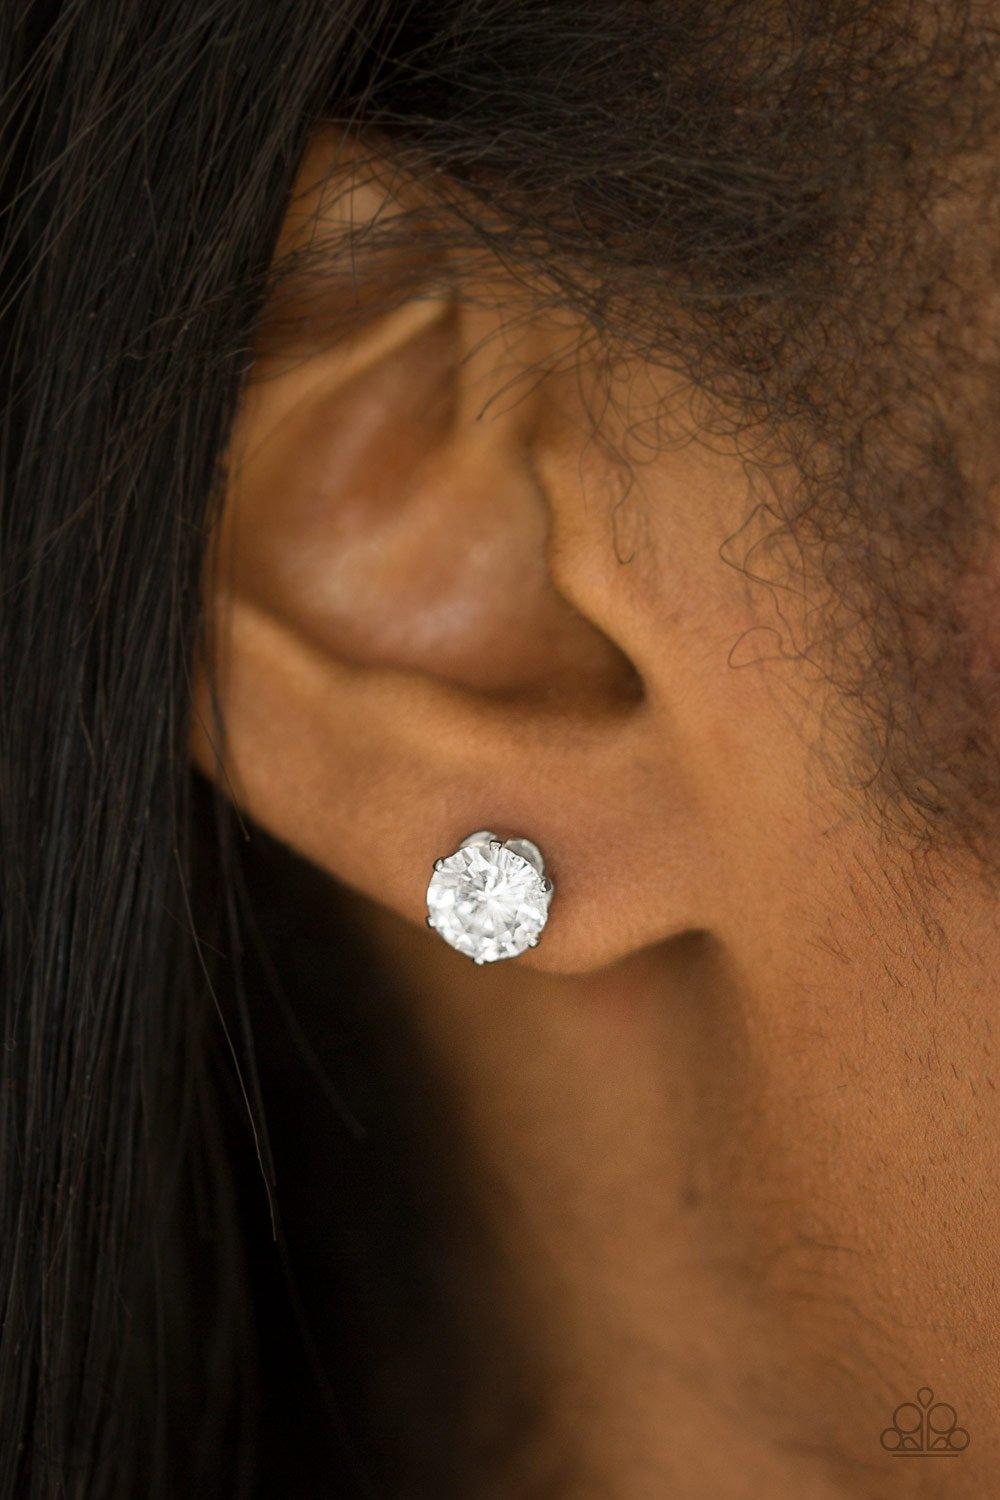 Just In TIMELESS White Earrings - Jewelry by Bretta